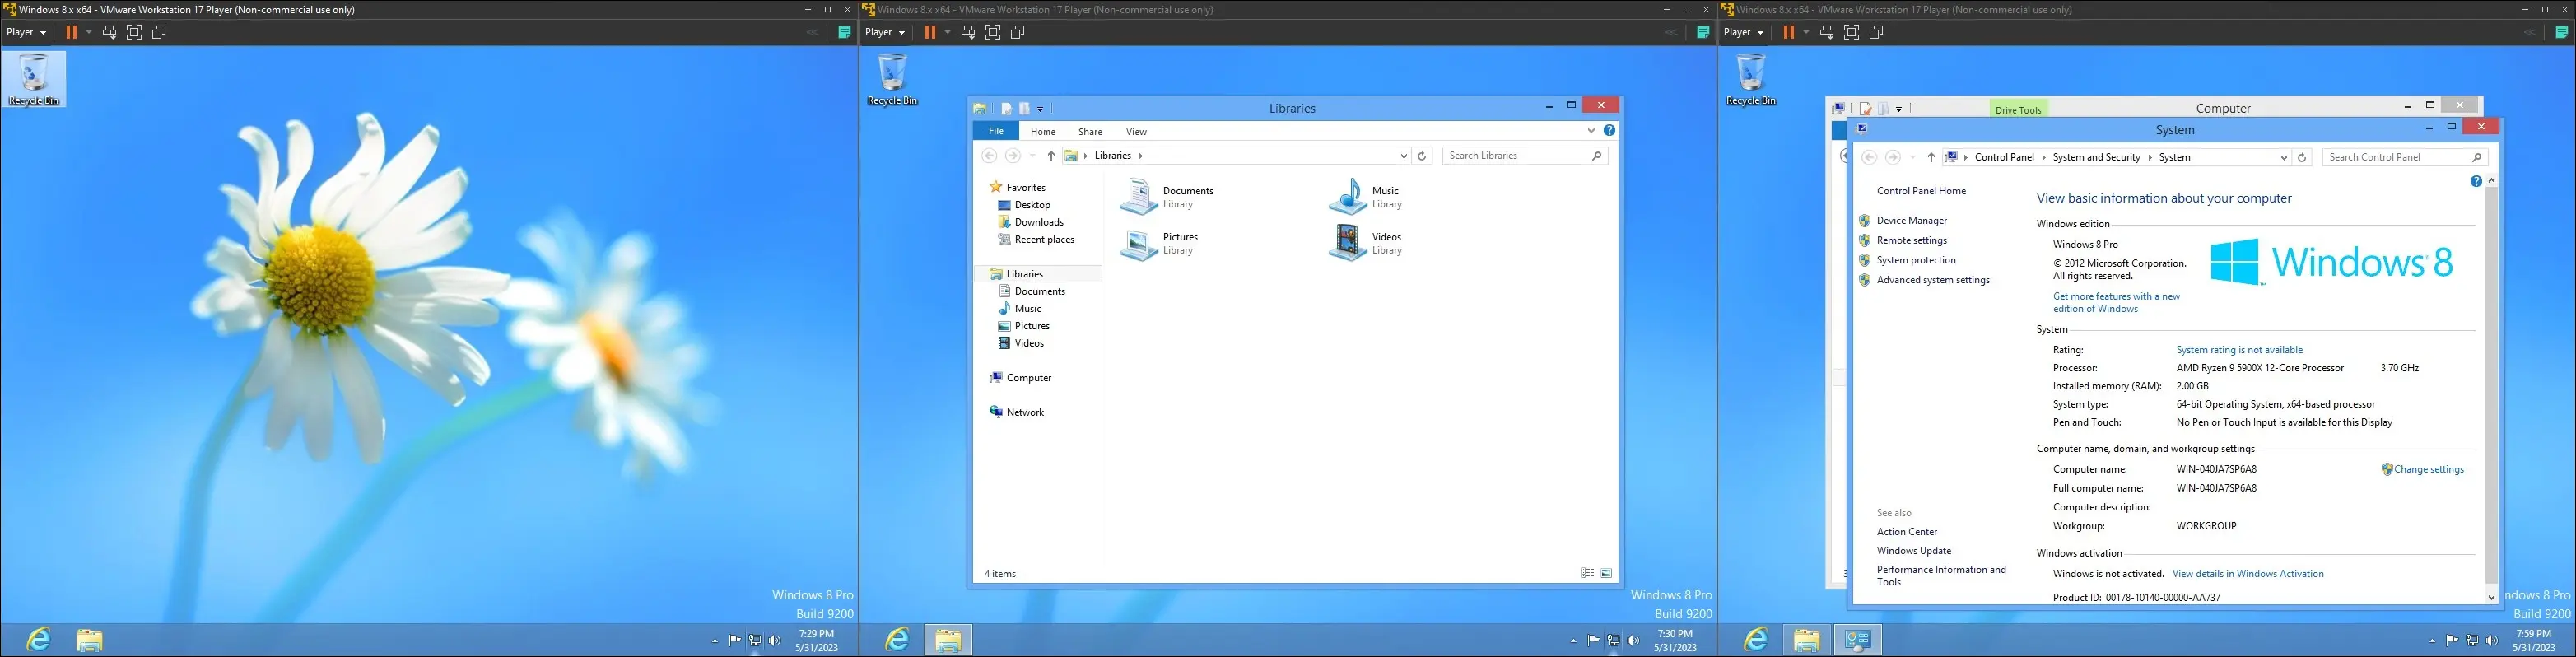 虚拟机上的 Windows 8 图像，显示桌面、资源管理器界面和“关于计算机页面”